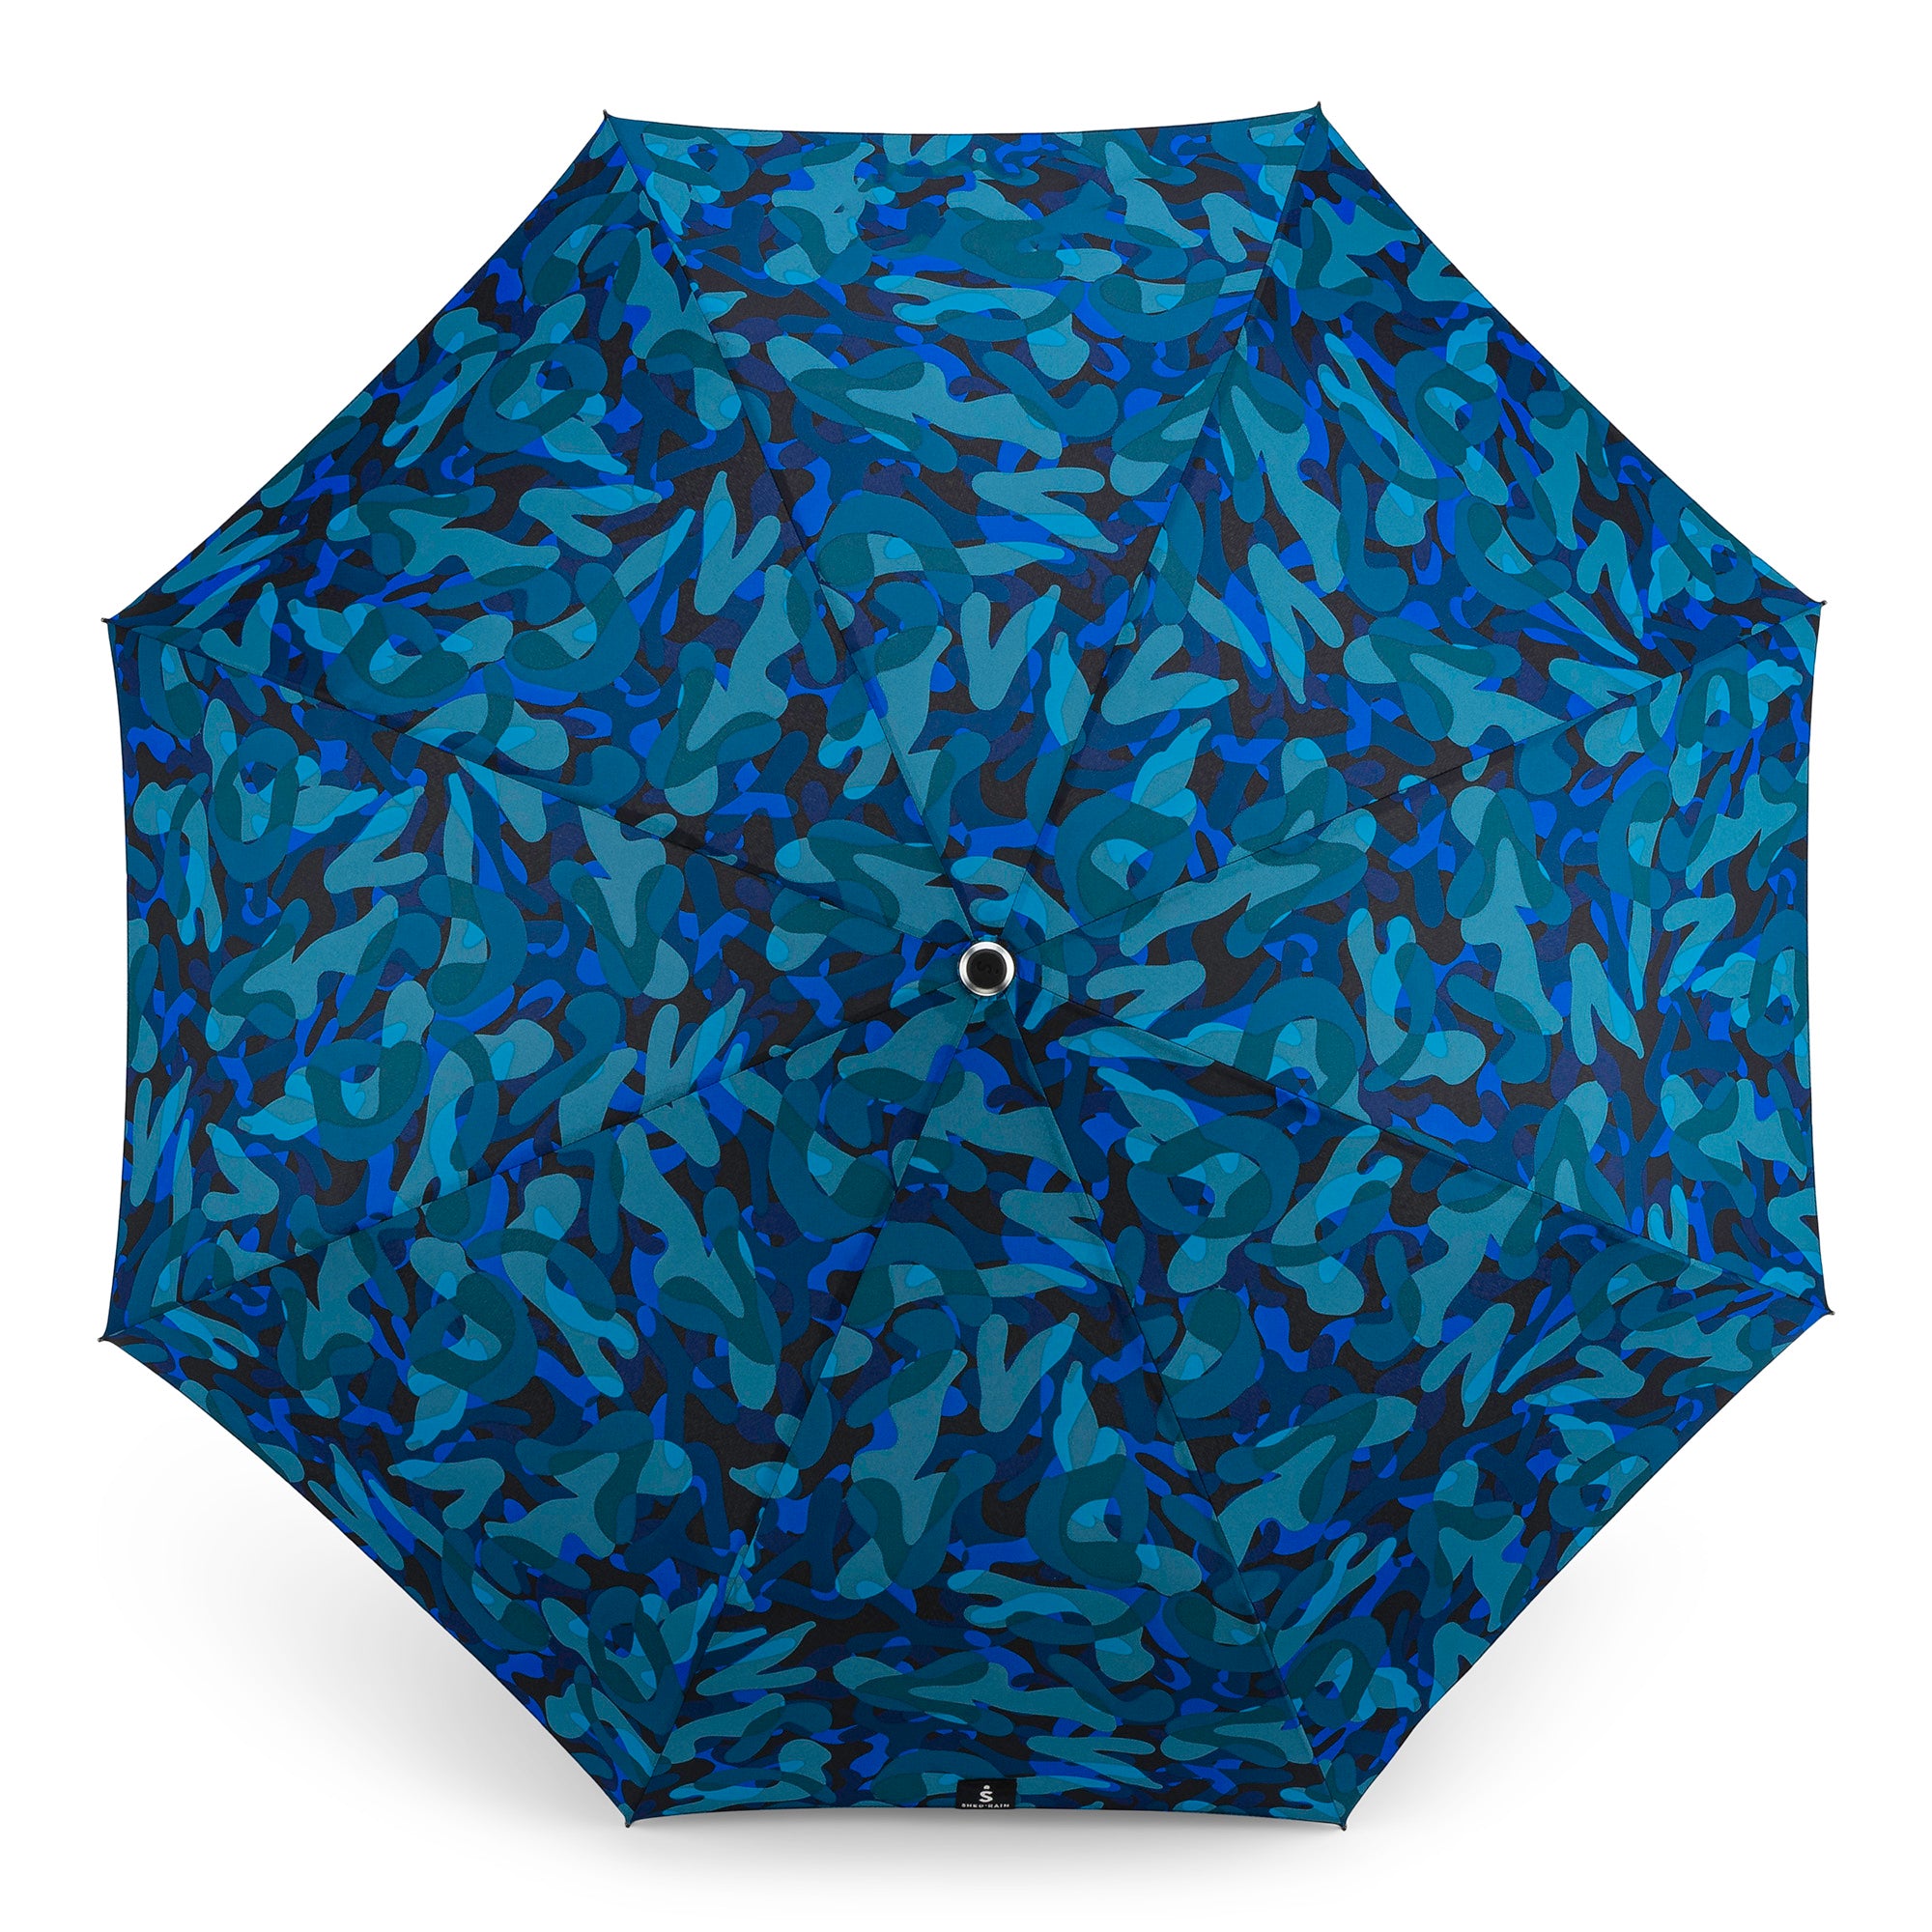 Auto Open Auto Close Compact Umbrella in blue camo inspired pattern - 2472 